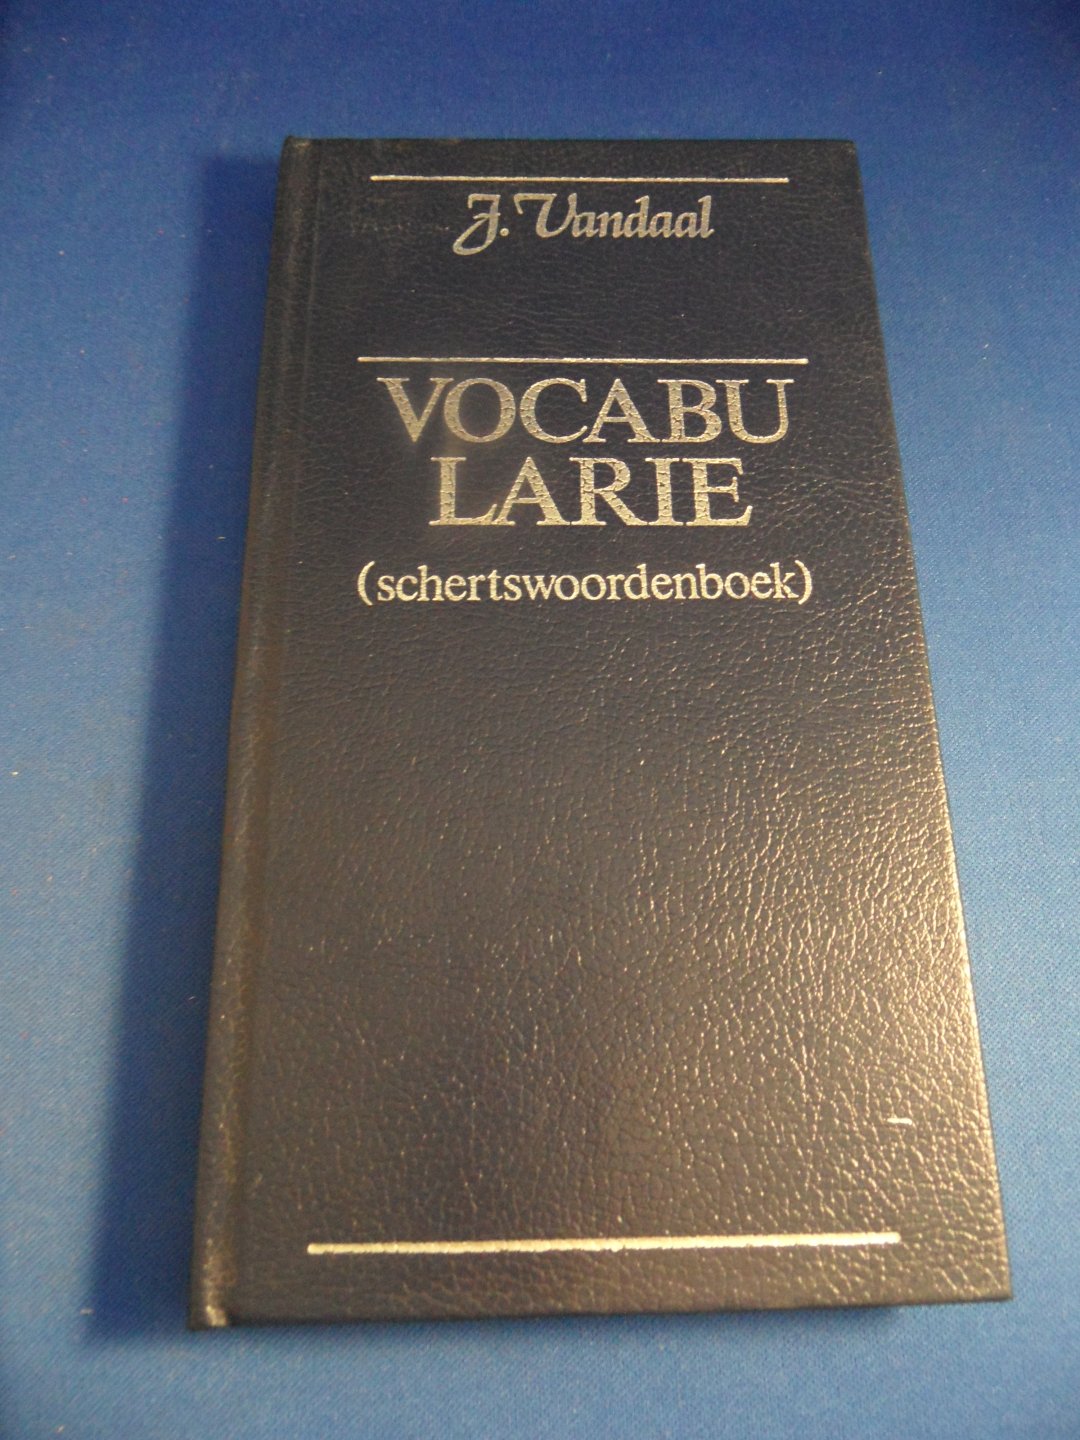 Vandaal, J. - Vocabularie. Schertswoordenboek.